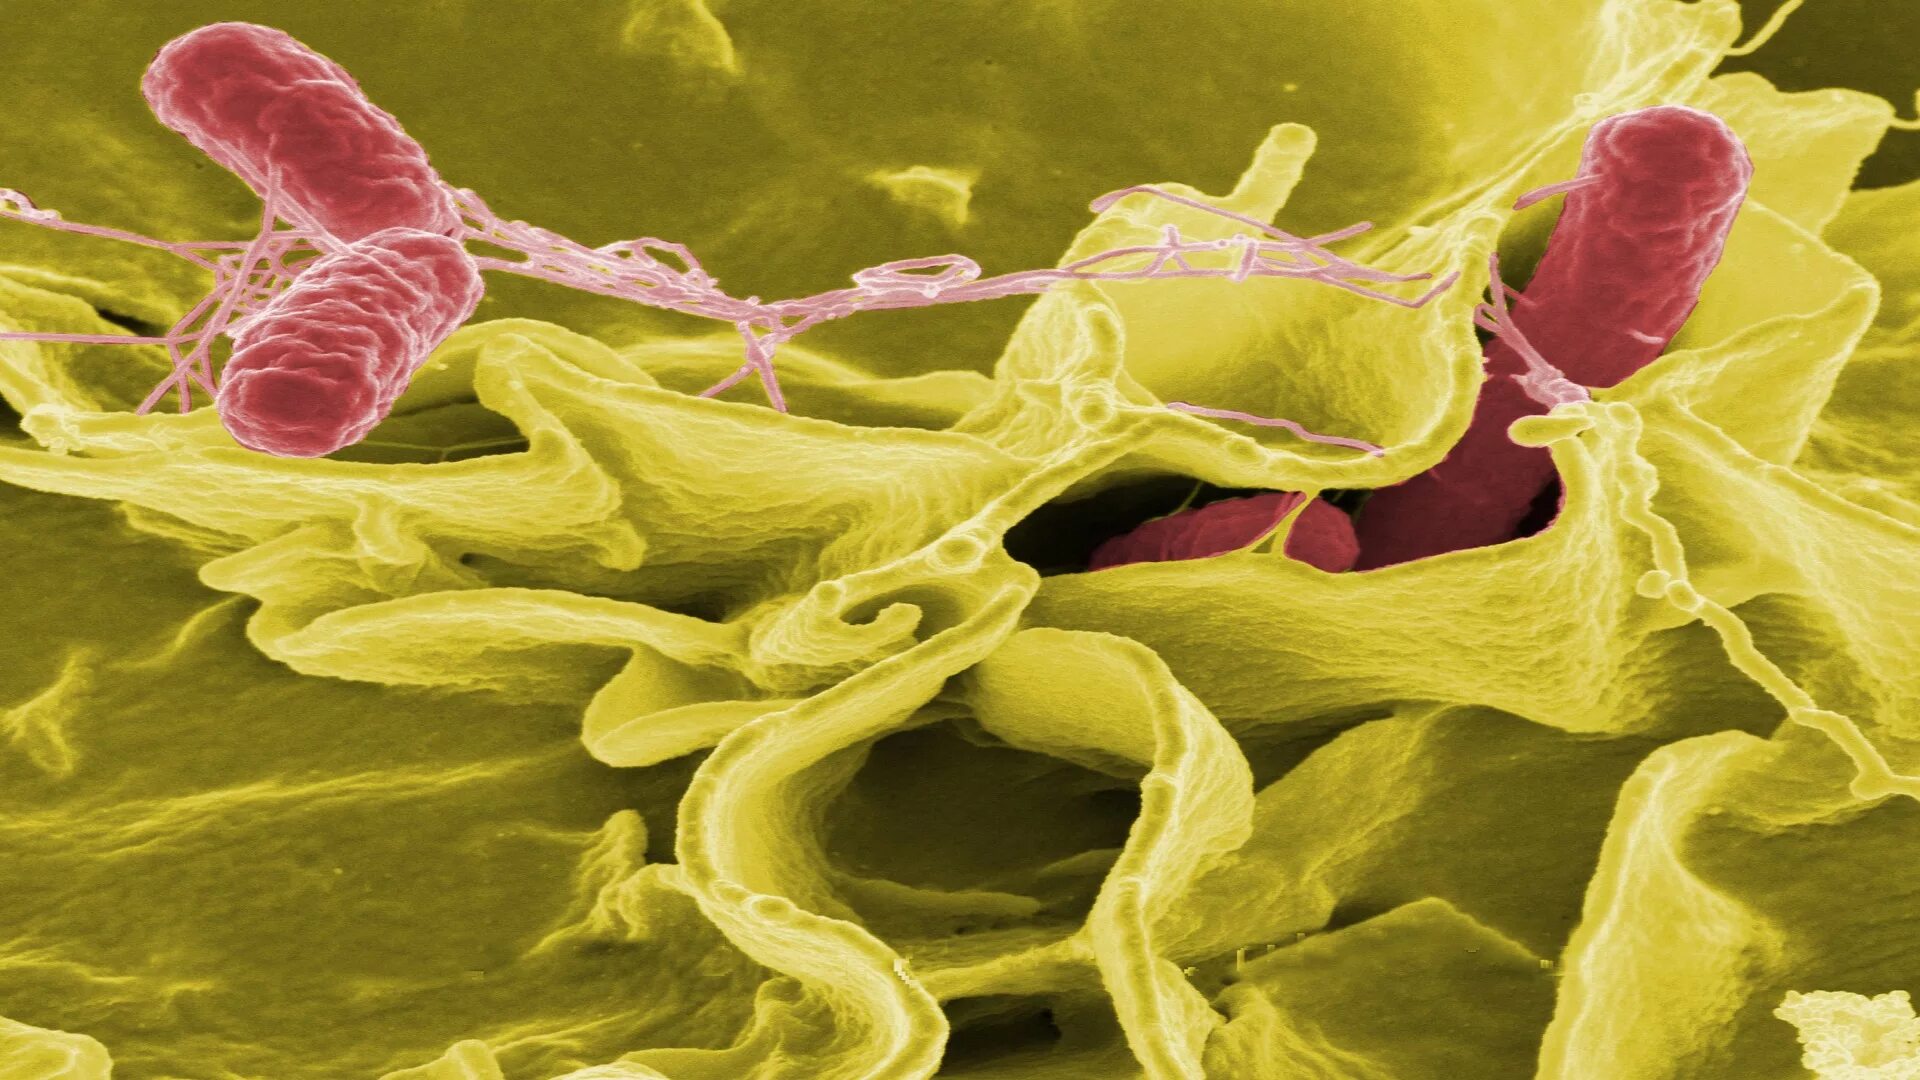 Микроорганизмы женских половых органов. Сальмонелла. Salmonella под микроскопом. Сальмонеллез. Сальмонеллез фото.